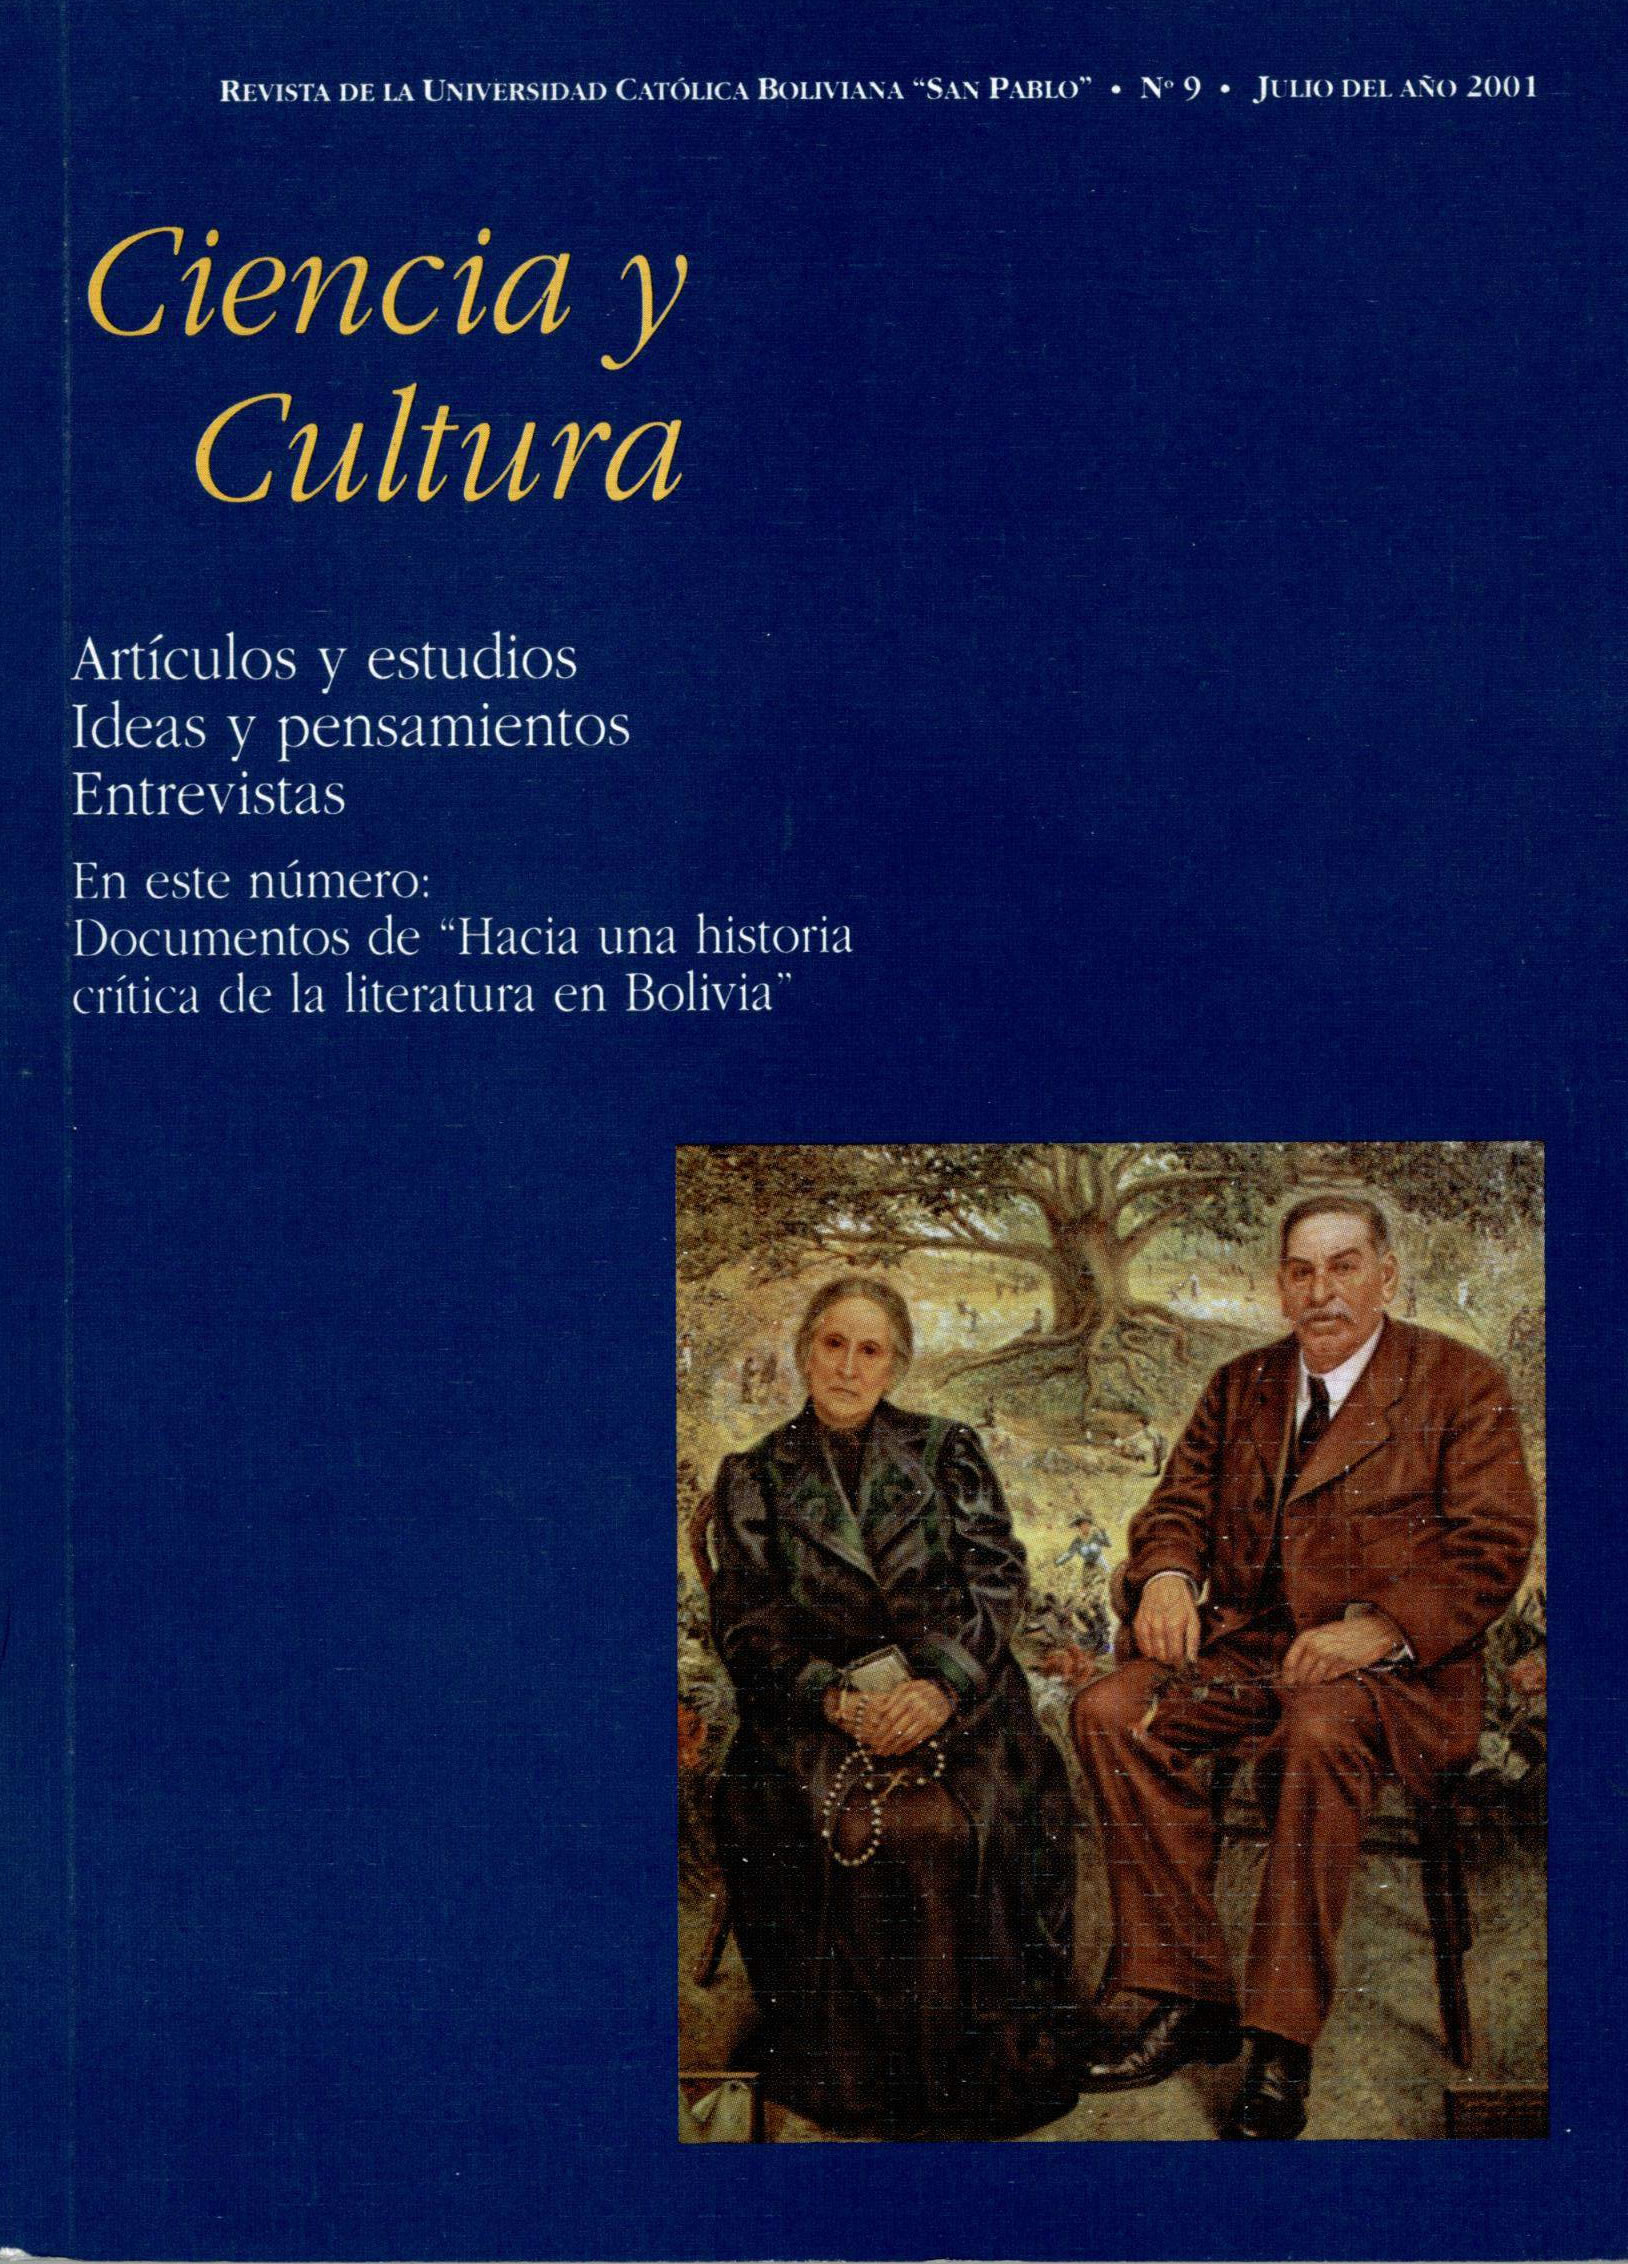 Documentos de "Hacia una historia crítica de la literatura en Bolivia"